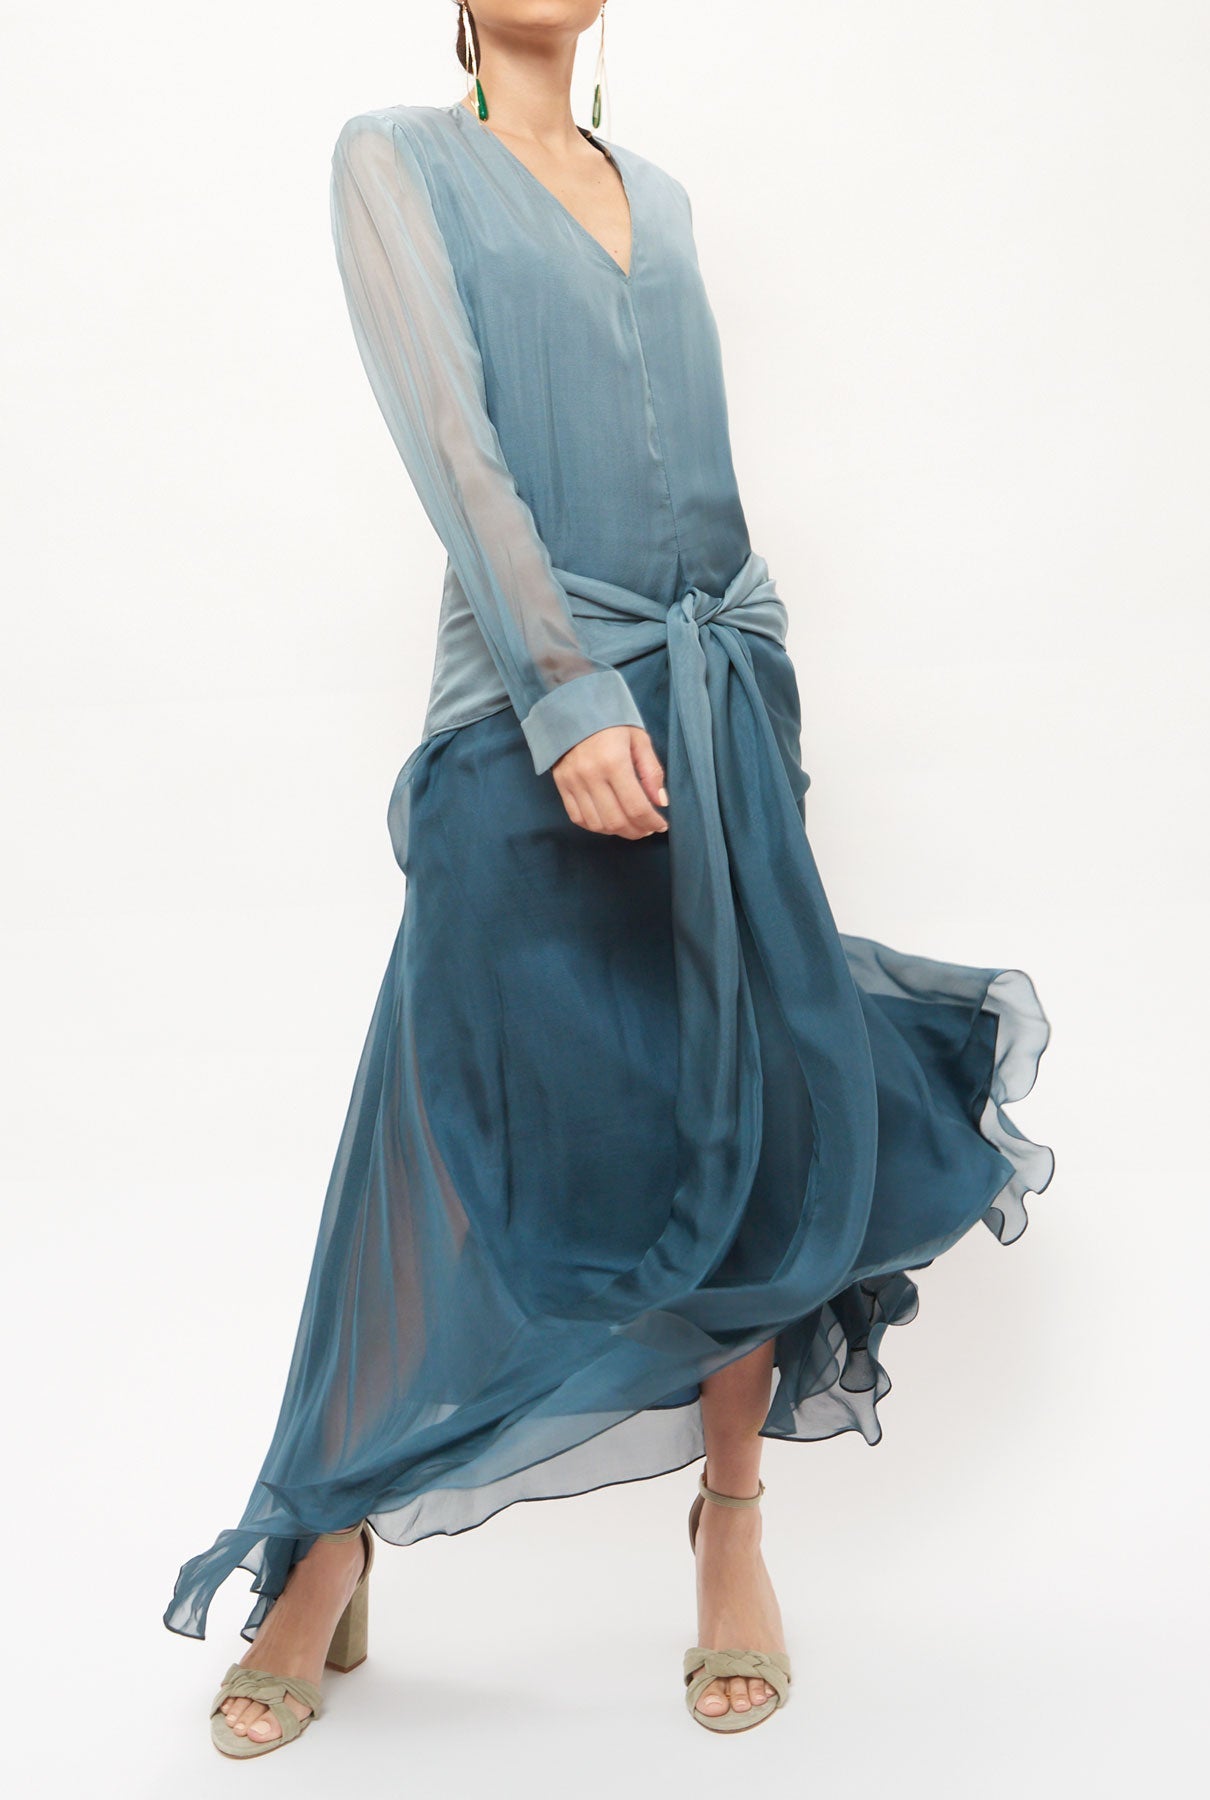 Knot dress blue - Unique piece Dress Miguel Marinero 